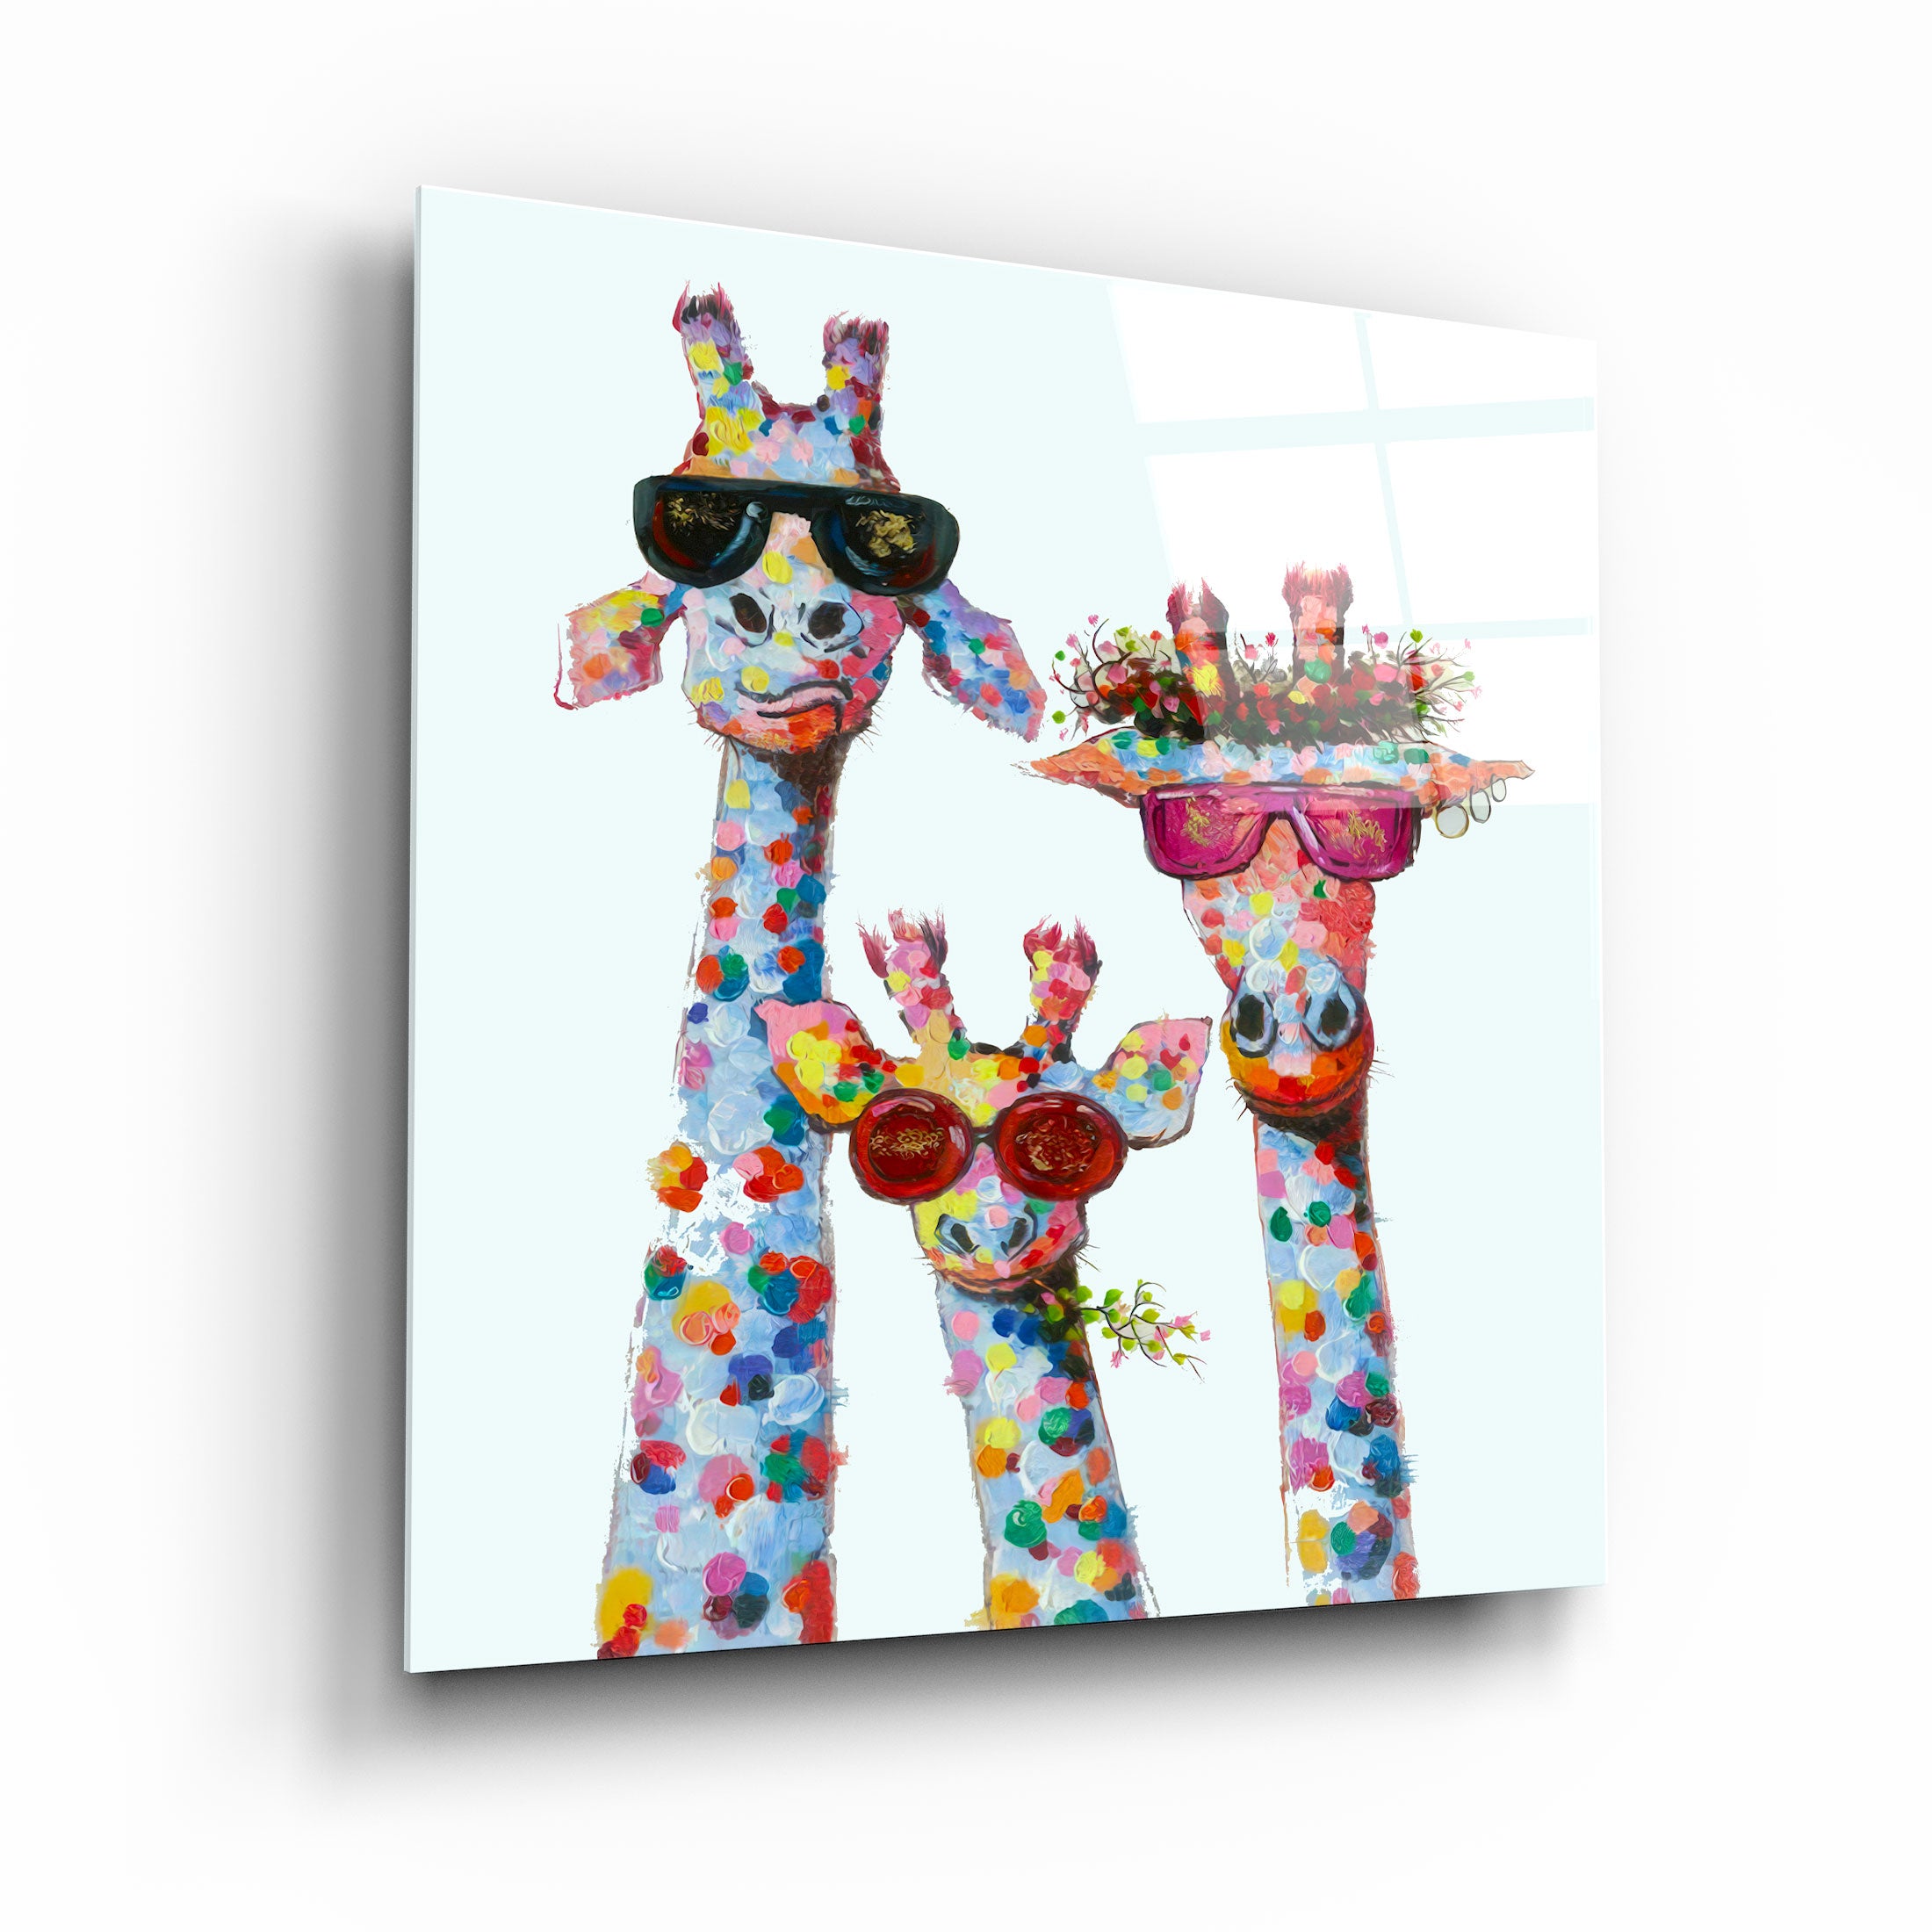 "Famille drôle de girafe". Art mural en verre de la collection du designer